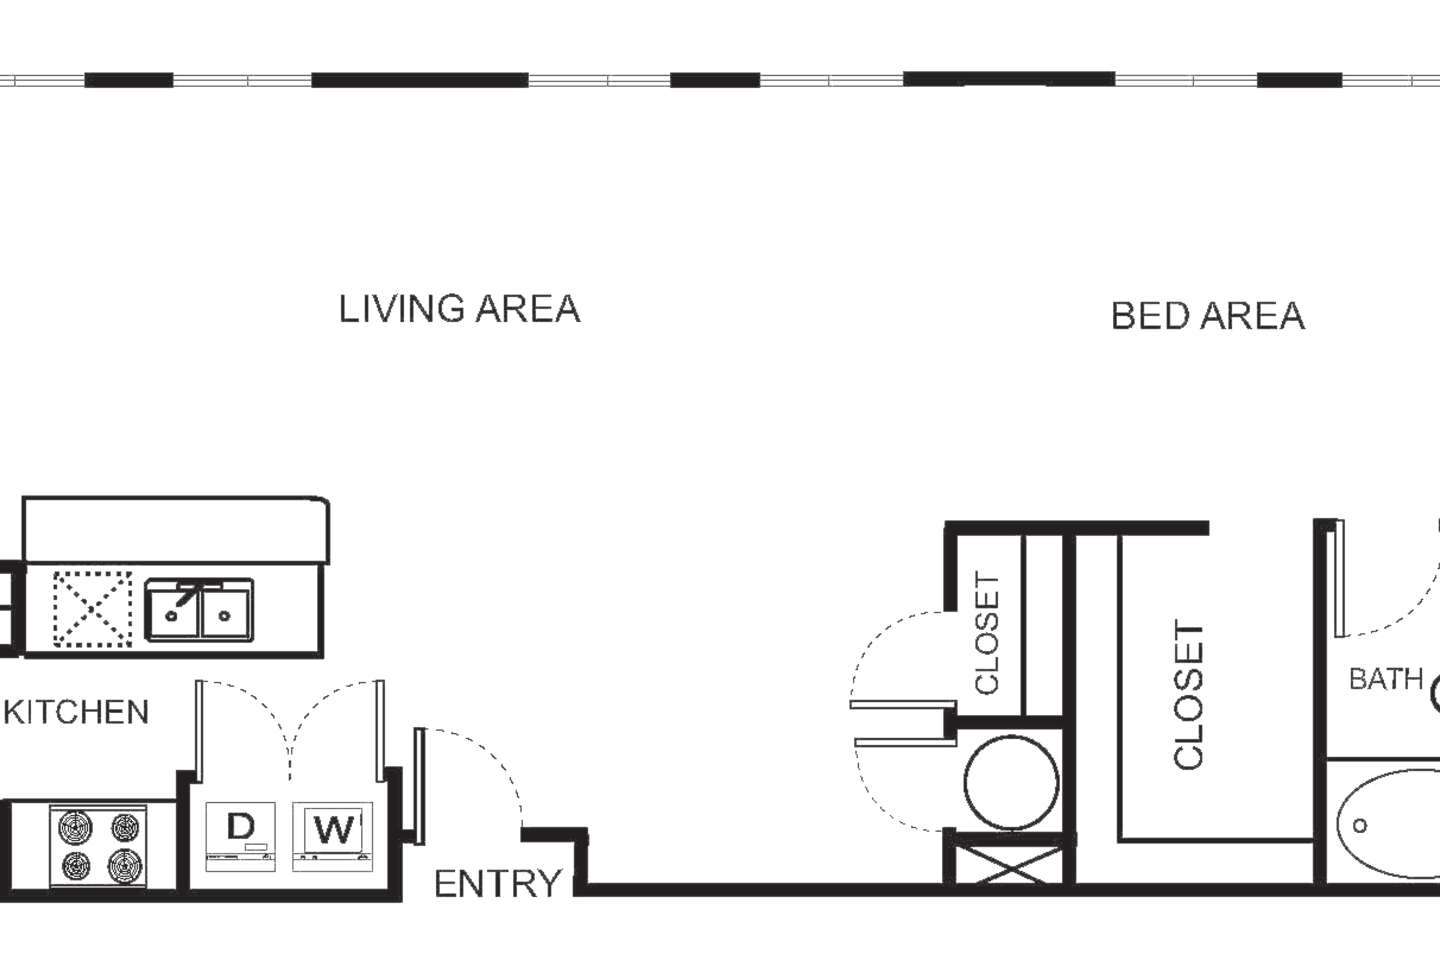 Floorplan diagram for Indi 2-DE Studio, showing Studio